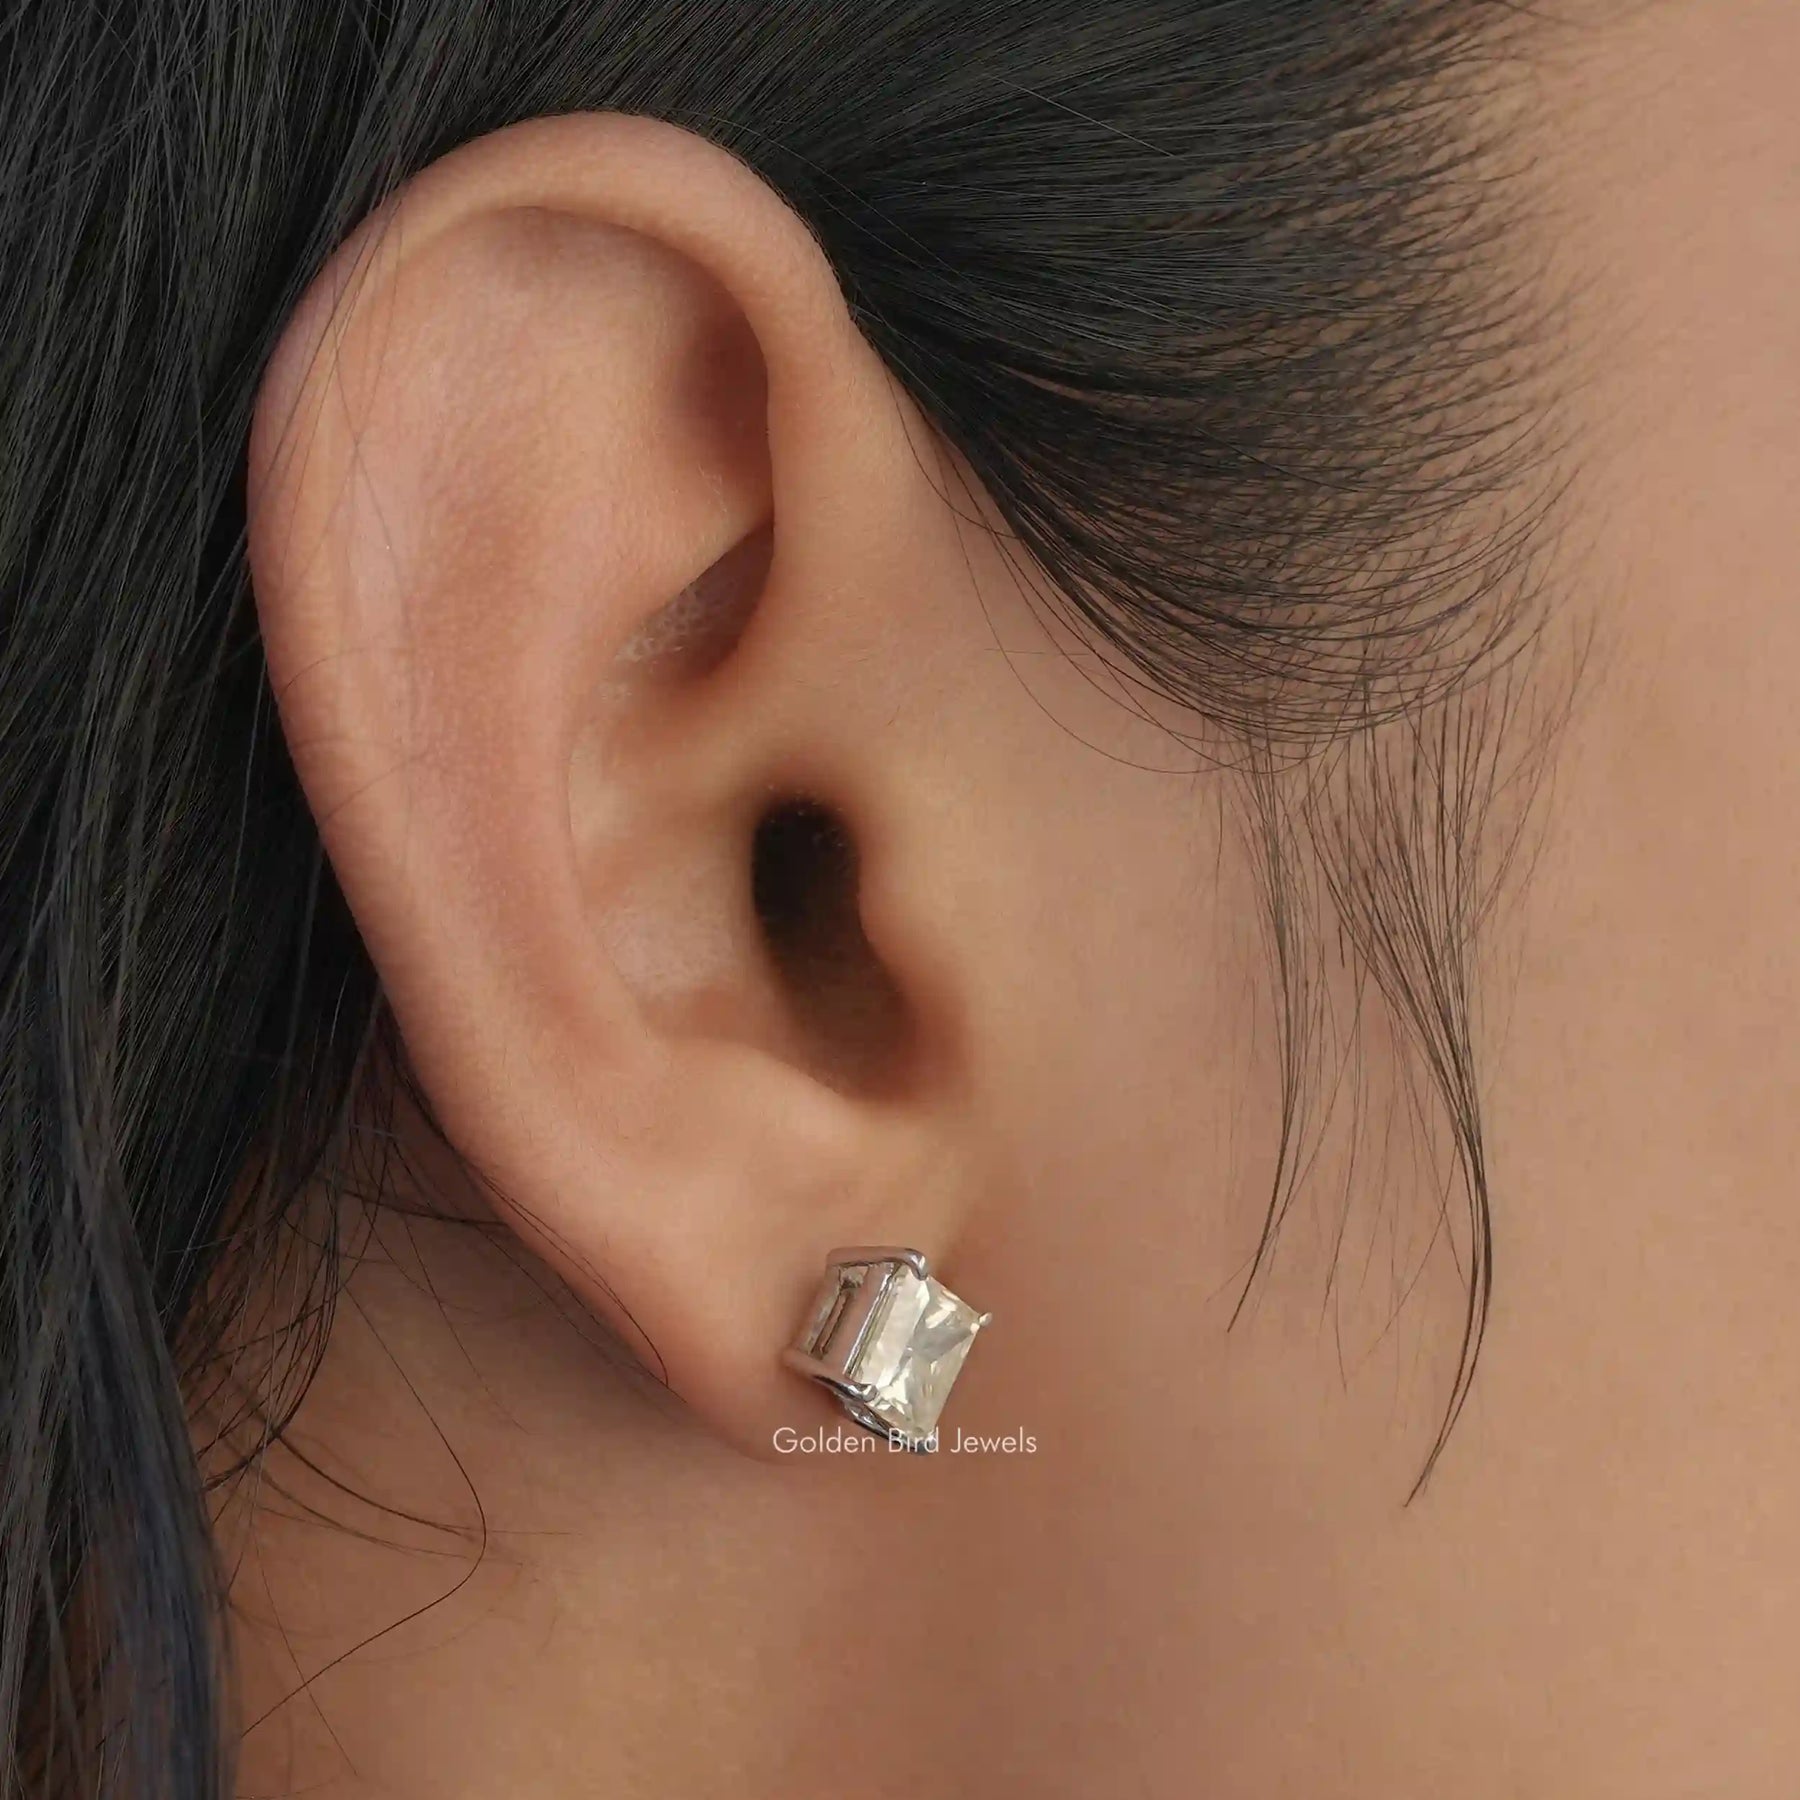 [In ear front view of princess cut stud earrings set in 4 prongs]-[Golden Bird Jewels]